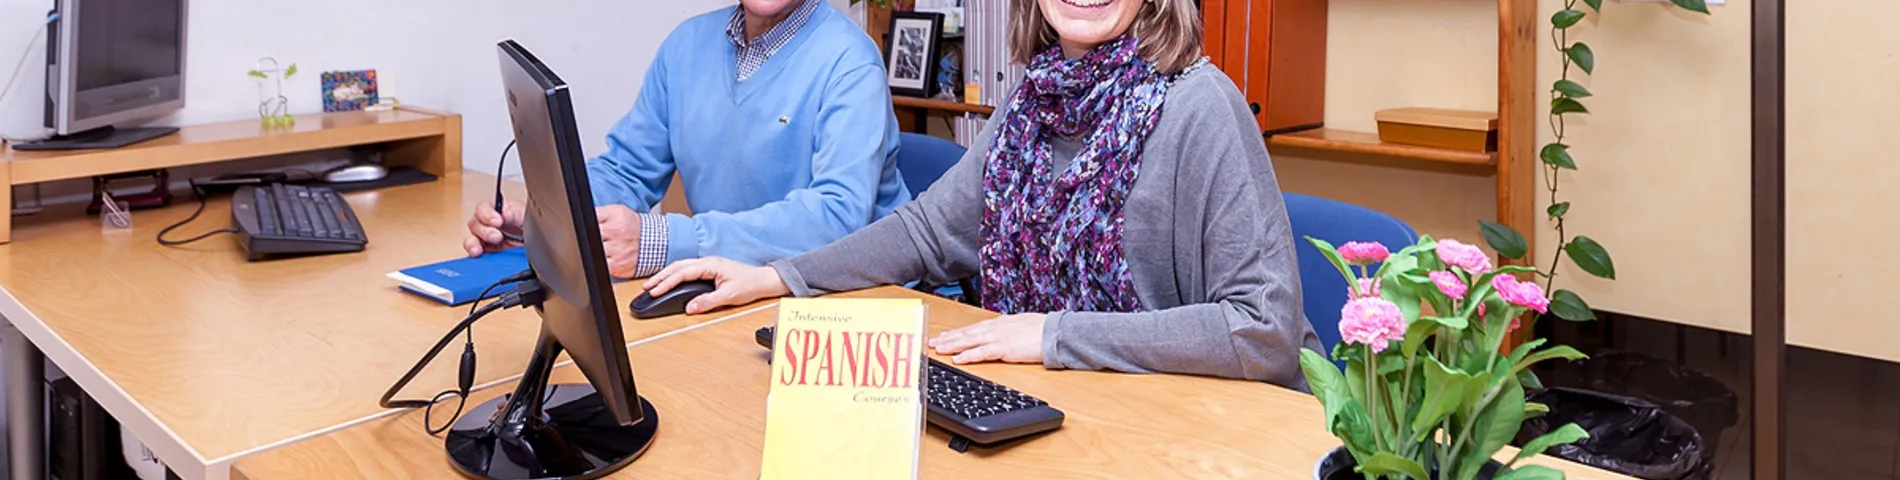 Hola Spanish Courses kép 1